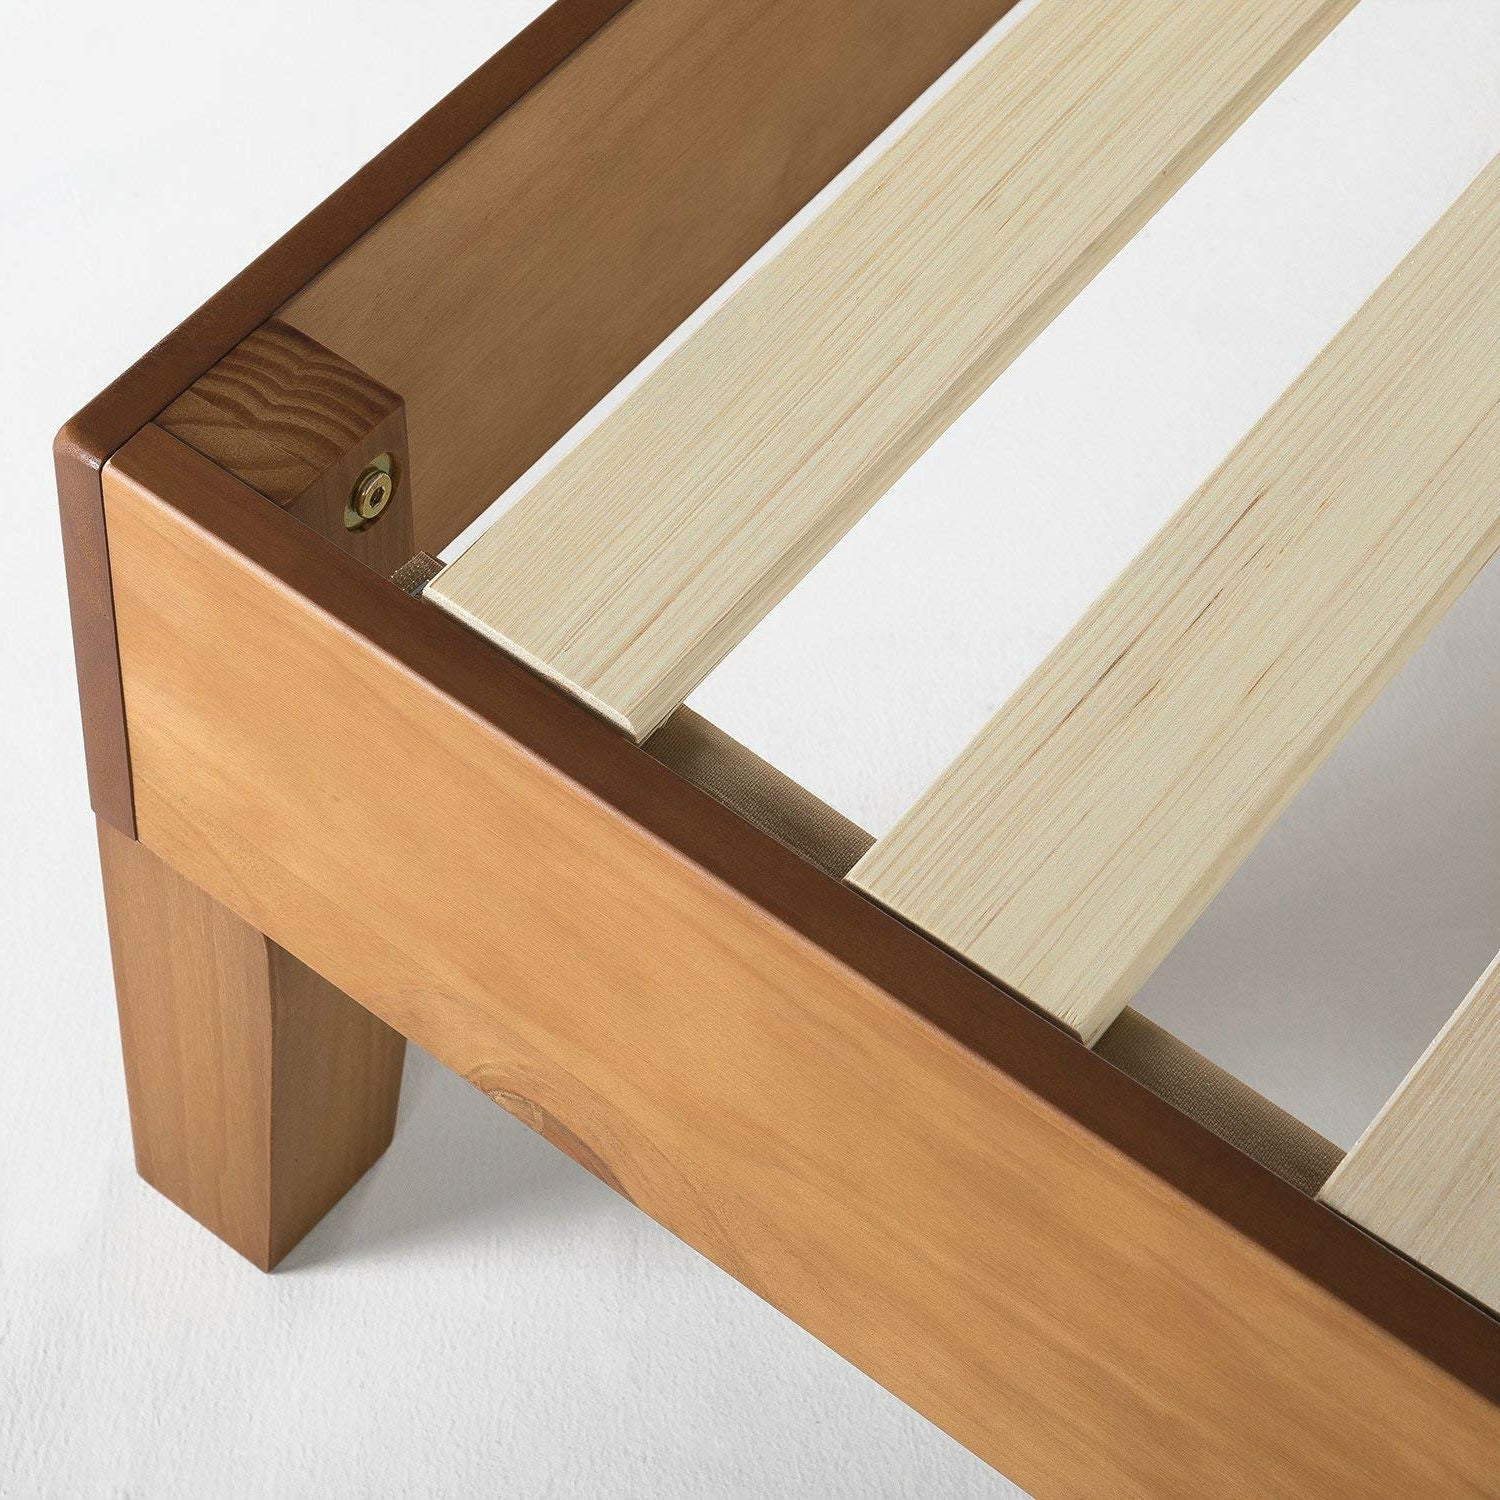 Bedroom > Bed Frames > Platform Beds - King Modern Classic Solid Wood Slat Platform Bed Frame In Natural Finish